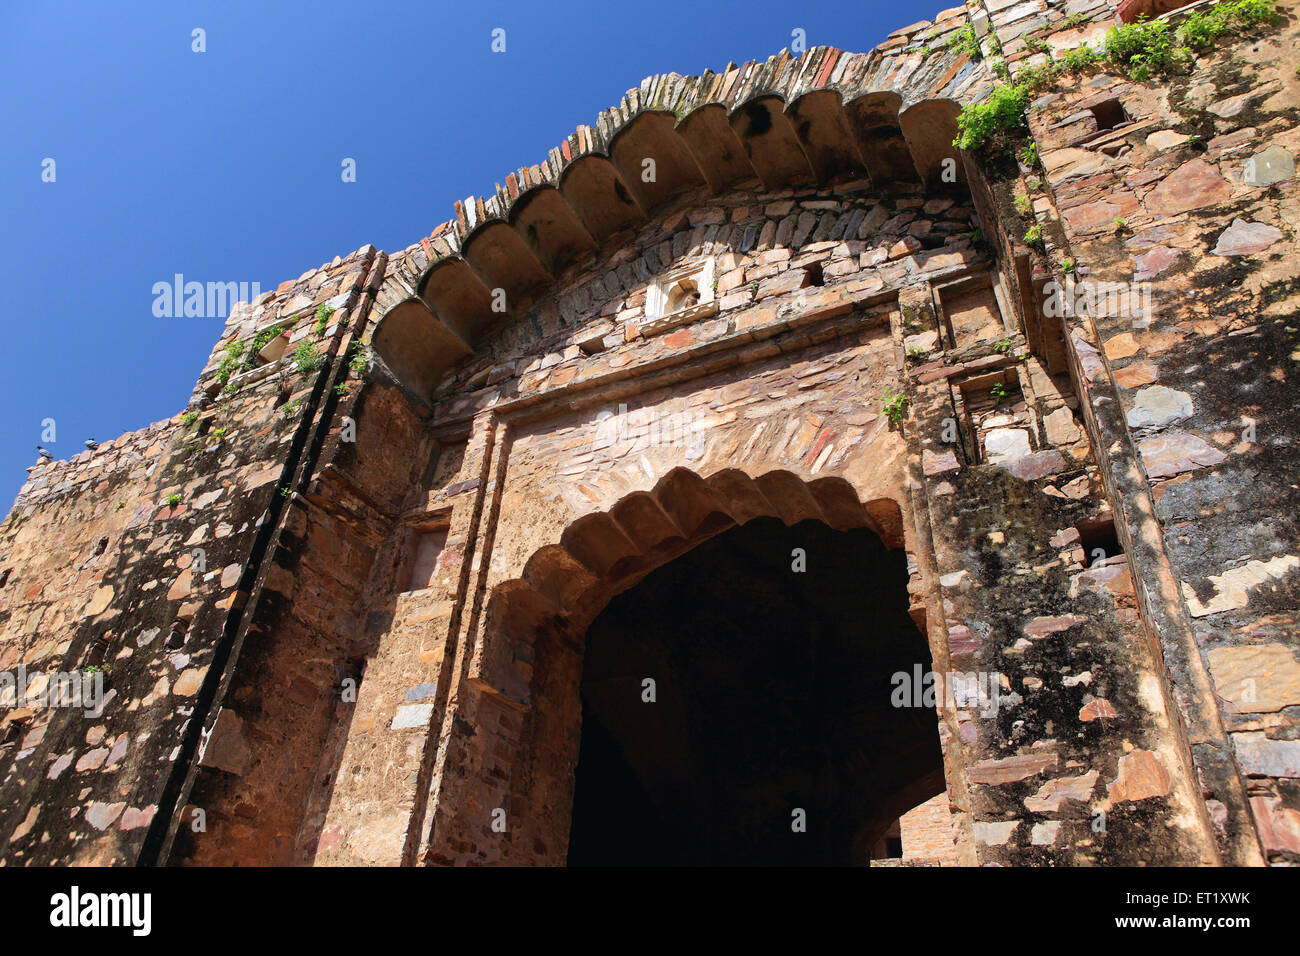 Bhangarh Fort ; Rundh Bhangarh ; Bhangarh ; Rajgarh ; Alwar ; Rajasthan ; India ; Asia Foto Stock